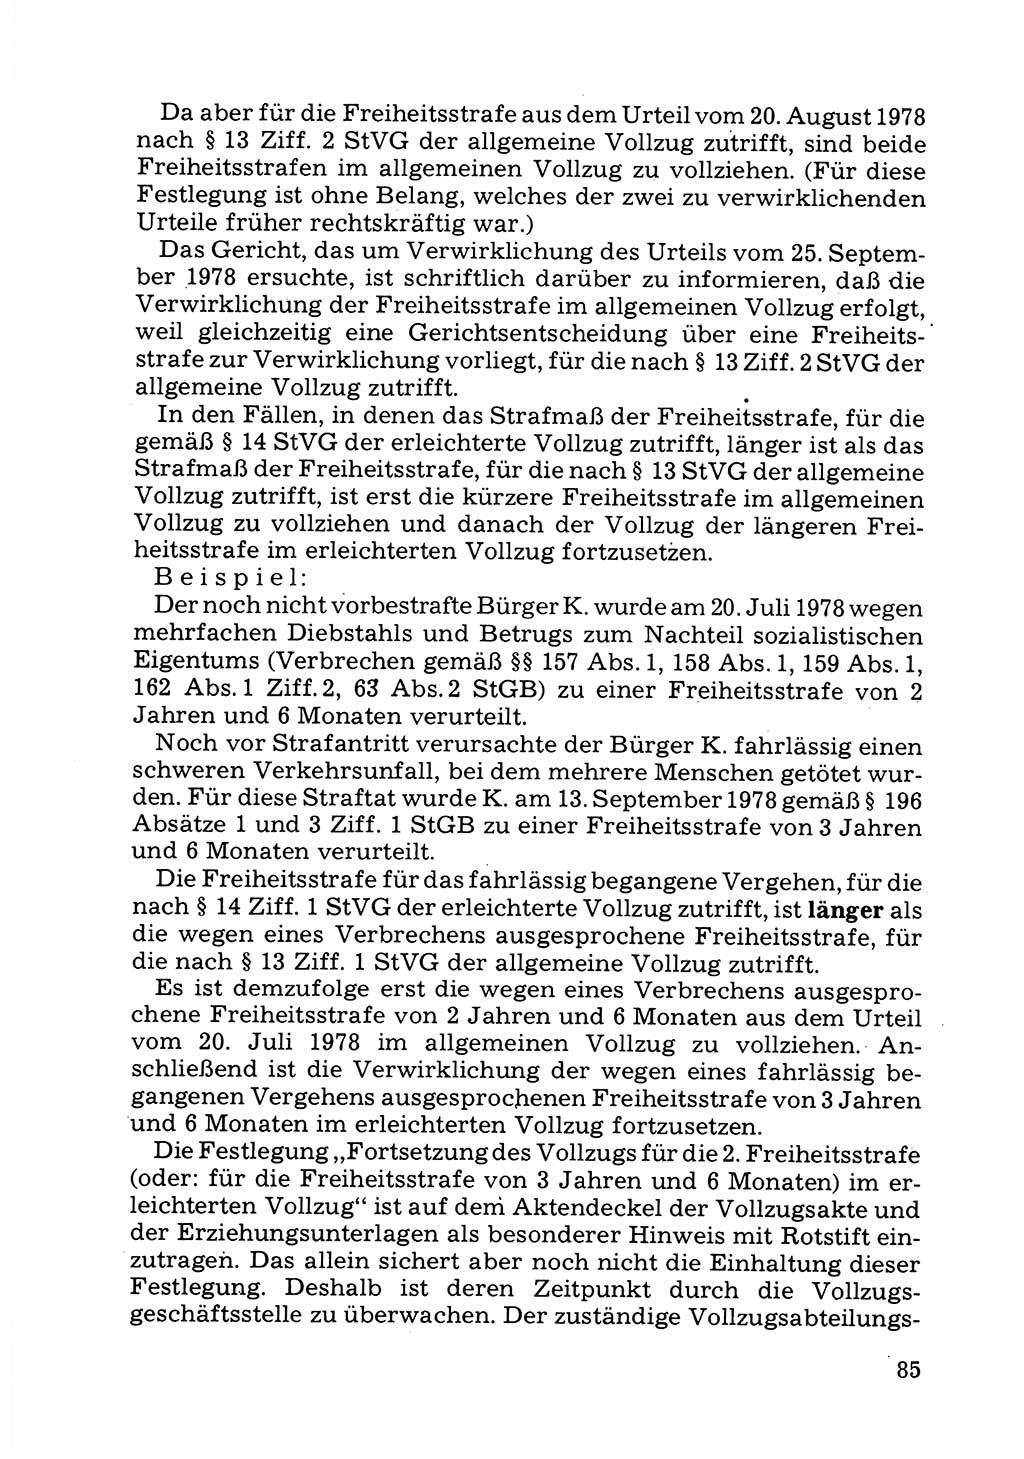 Verwaltungsmäßige Aufgaben beim Vollzug der Untersuchungshaft (U-Haft) sowie der Strafen mit Freiheitsentzug (SV) [Deutsche Demokratische Republik (DDR)] 1980, Seite 85 (Aufg. Vollz. U-Haft SV DDR 1980, S. 85)